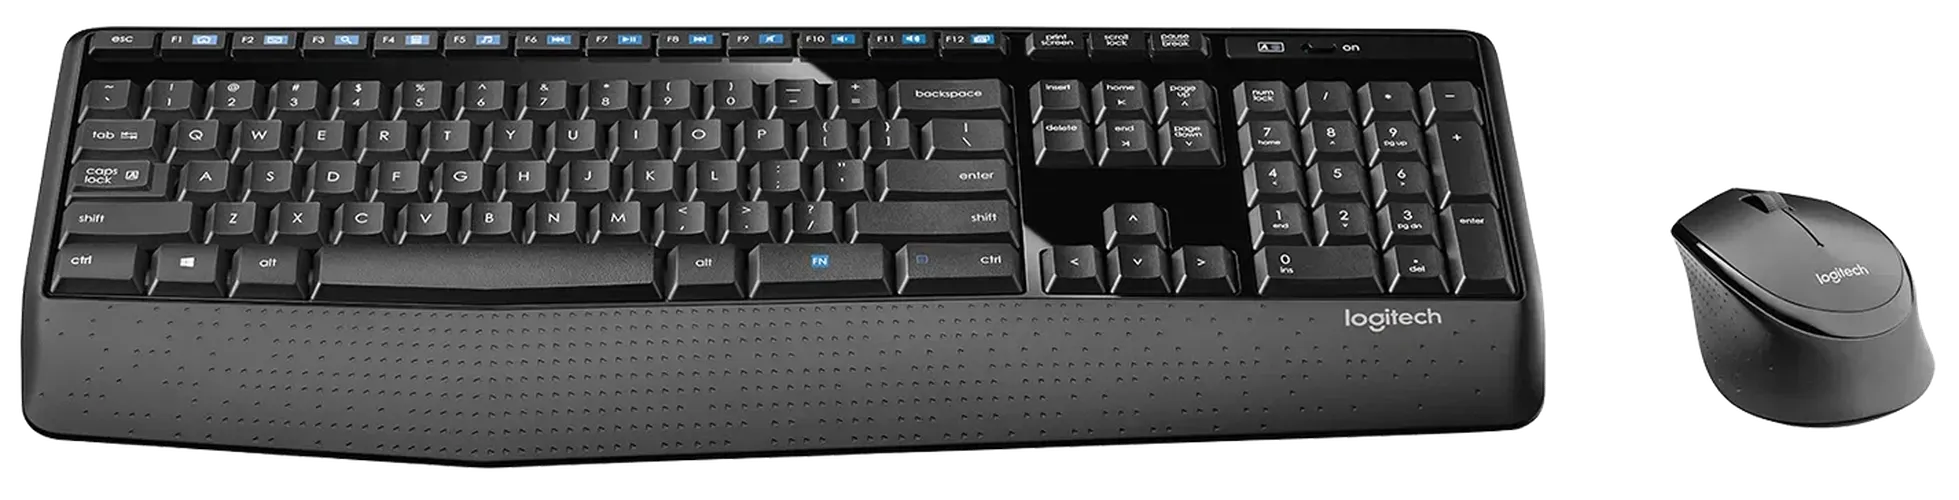 Kлавиатура+мышь Logitech MK345 Comfort, Черный, купить недорого